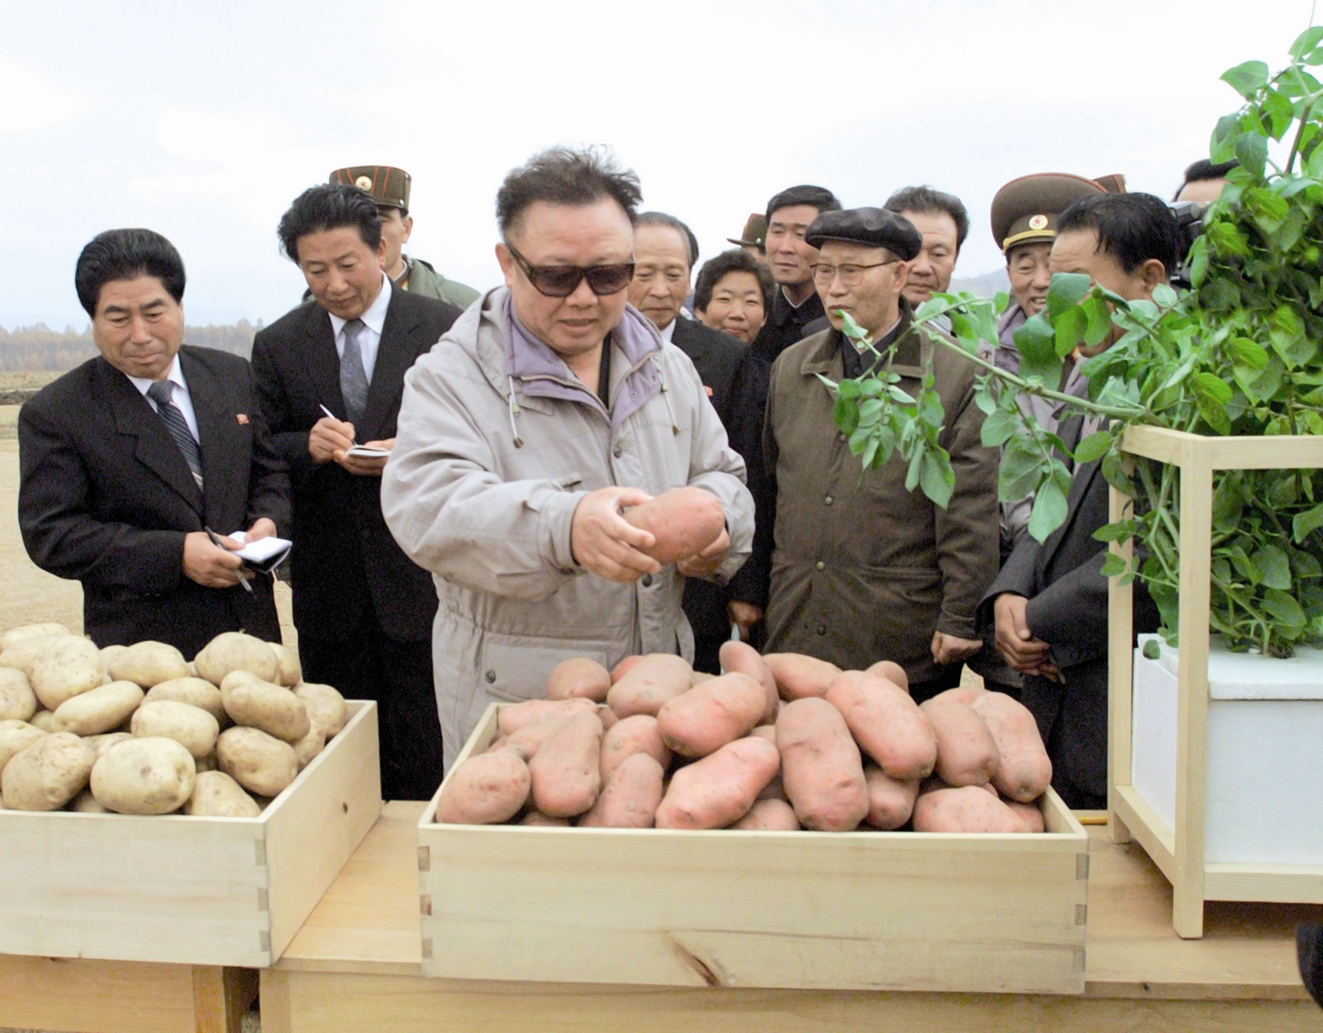 کیم جونگ ایل - رهبر پیشین کره شمالی